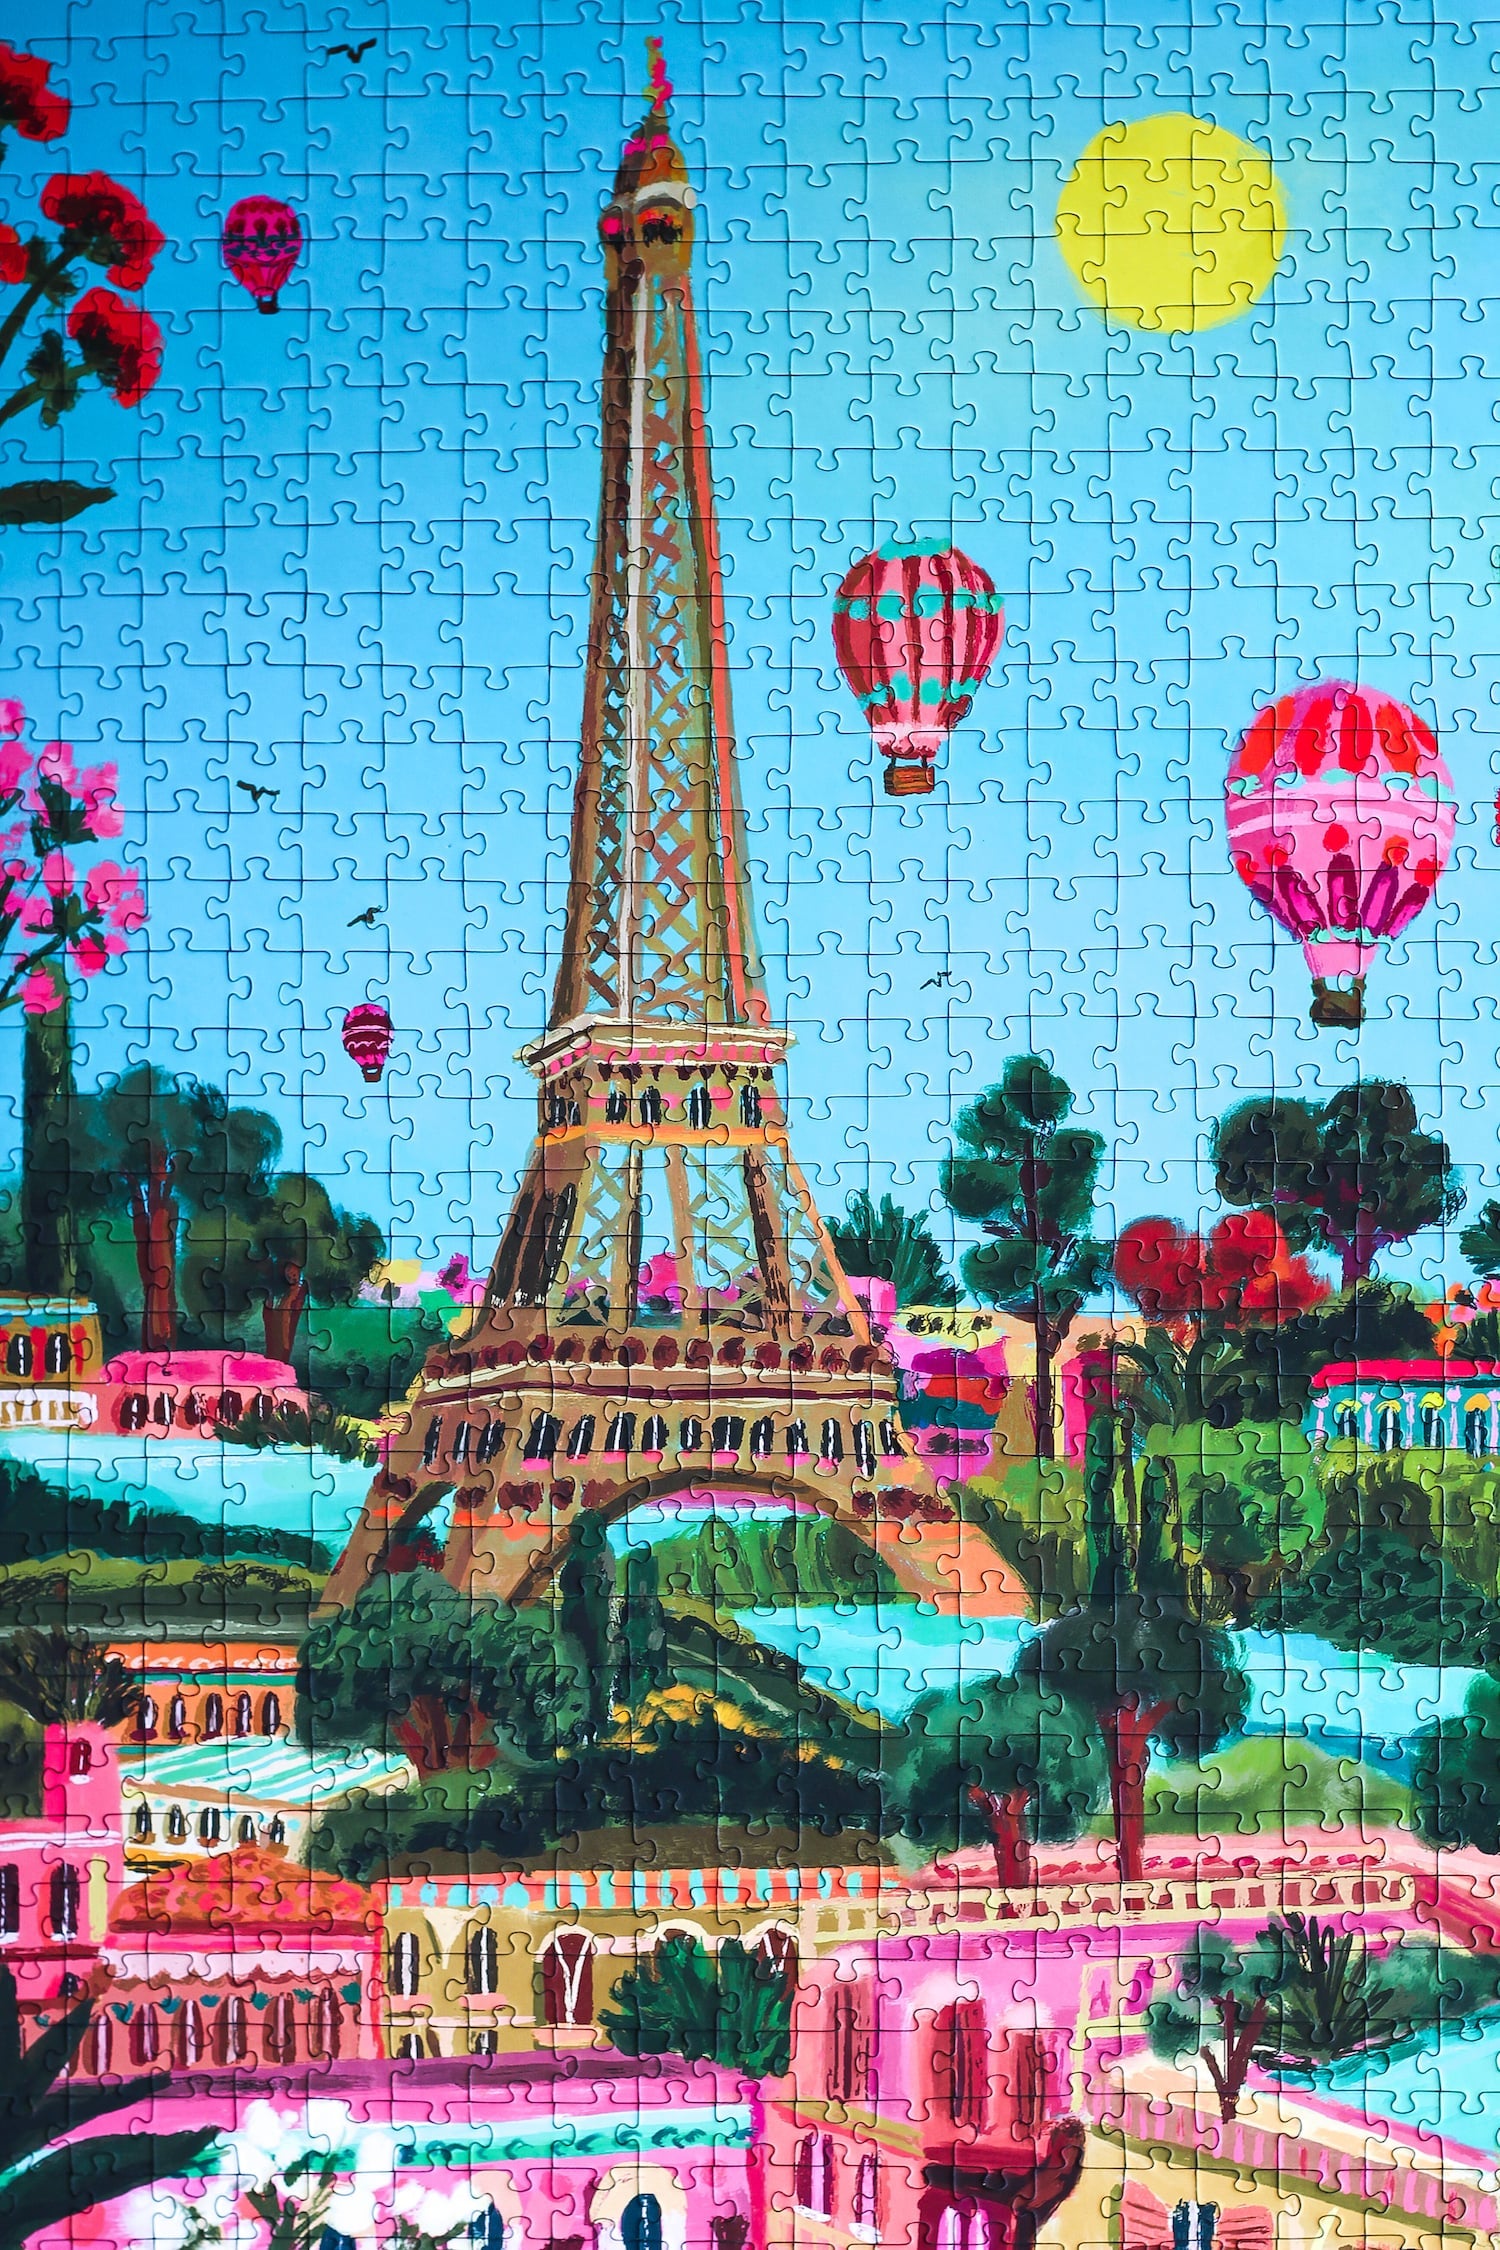 1000-teiliges Puzzle für Erwachsene, das den Eiffelturm in Paris zeigt. Die Sonne scheint, der Himmel ist blau und ind er Luft befinden sich mehrere Heißluftballons.